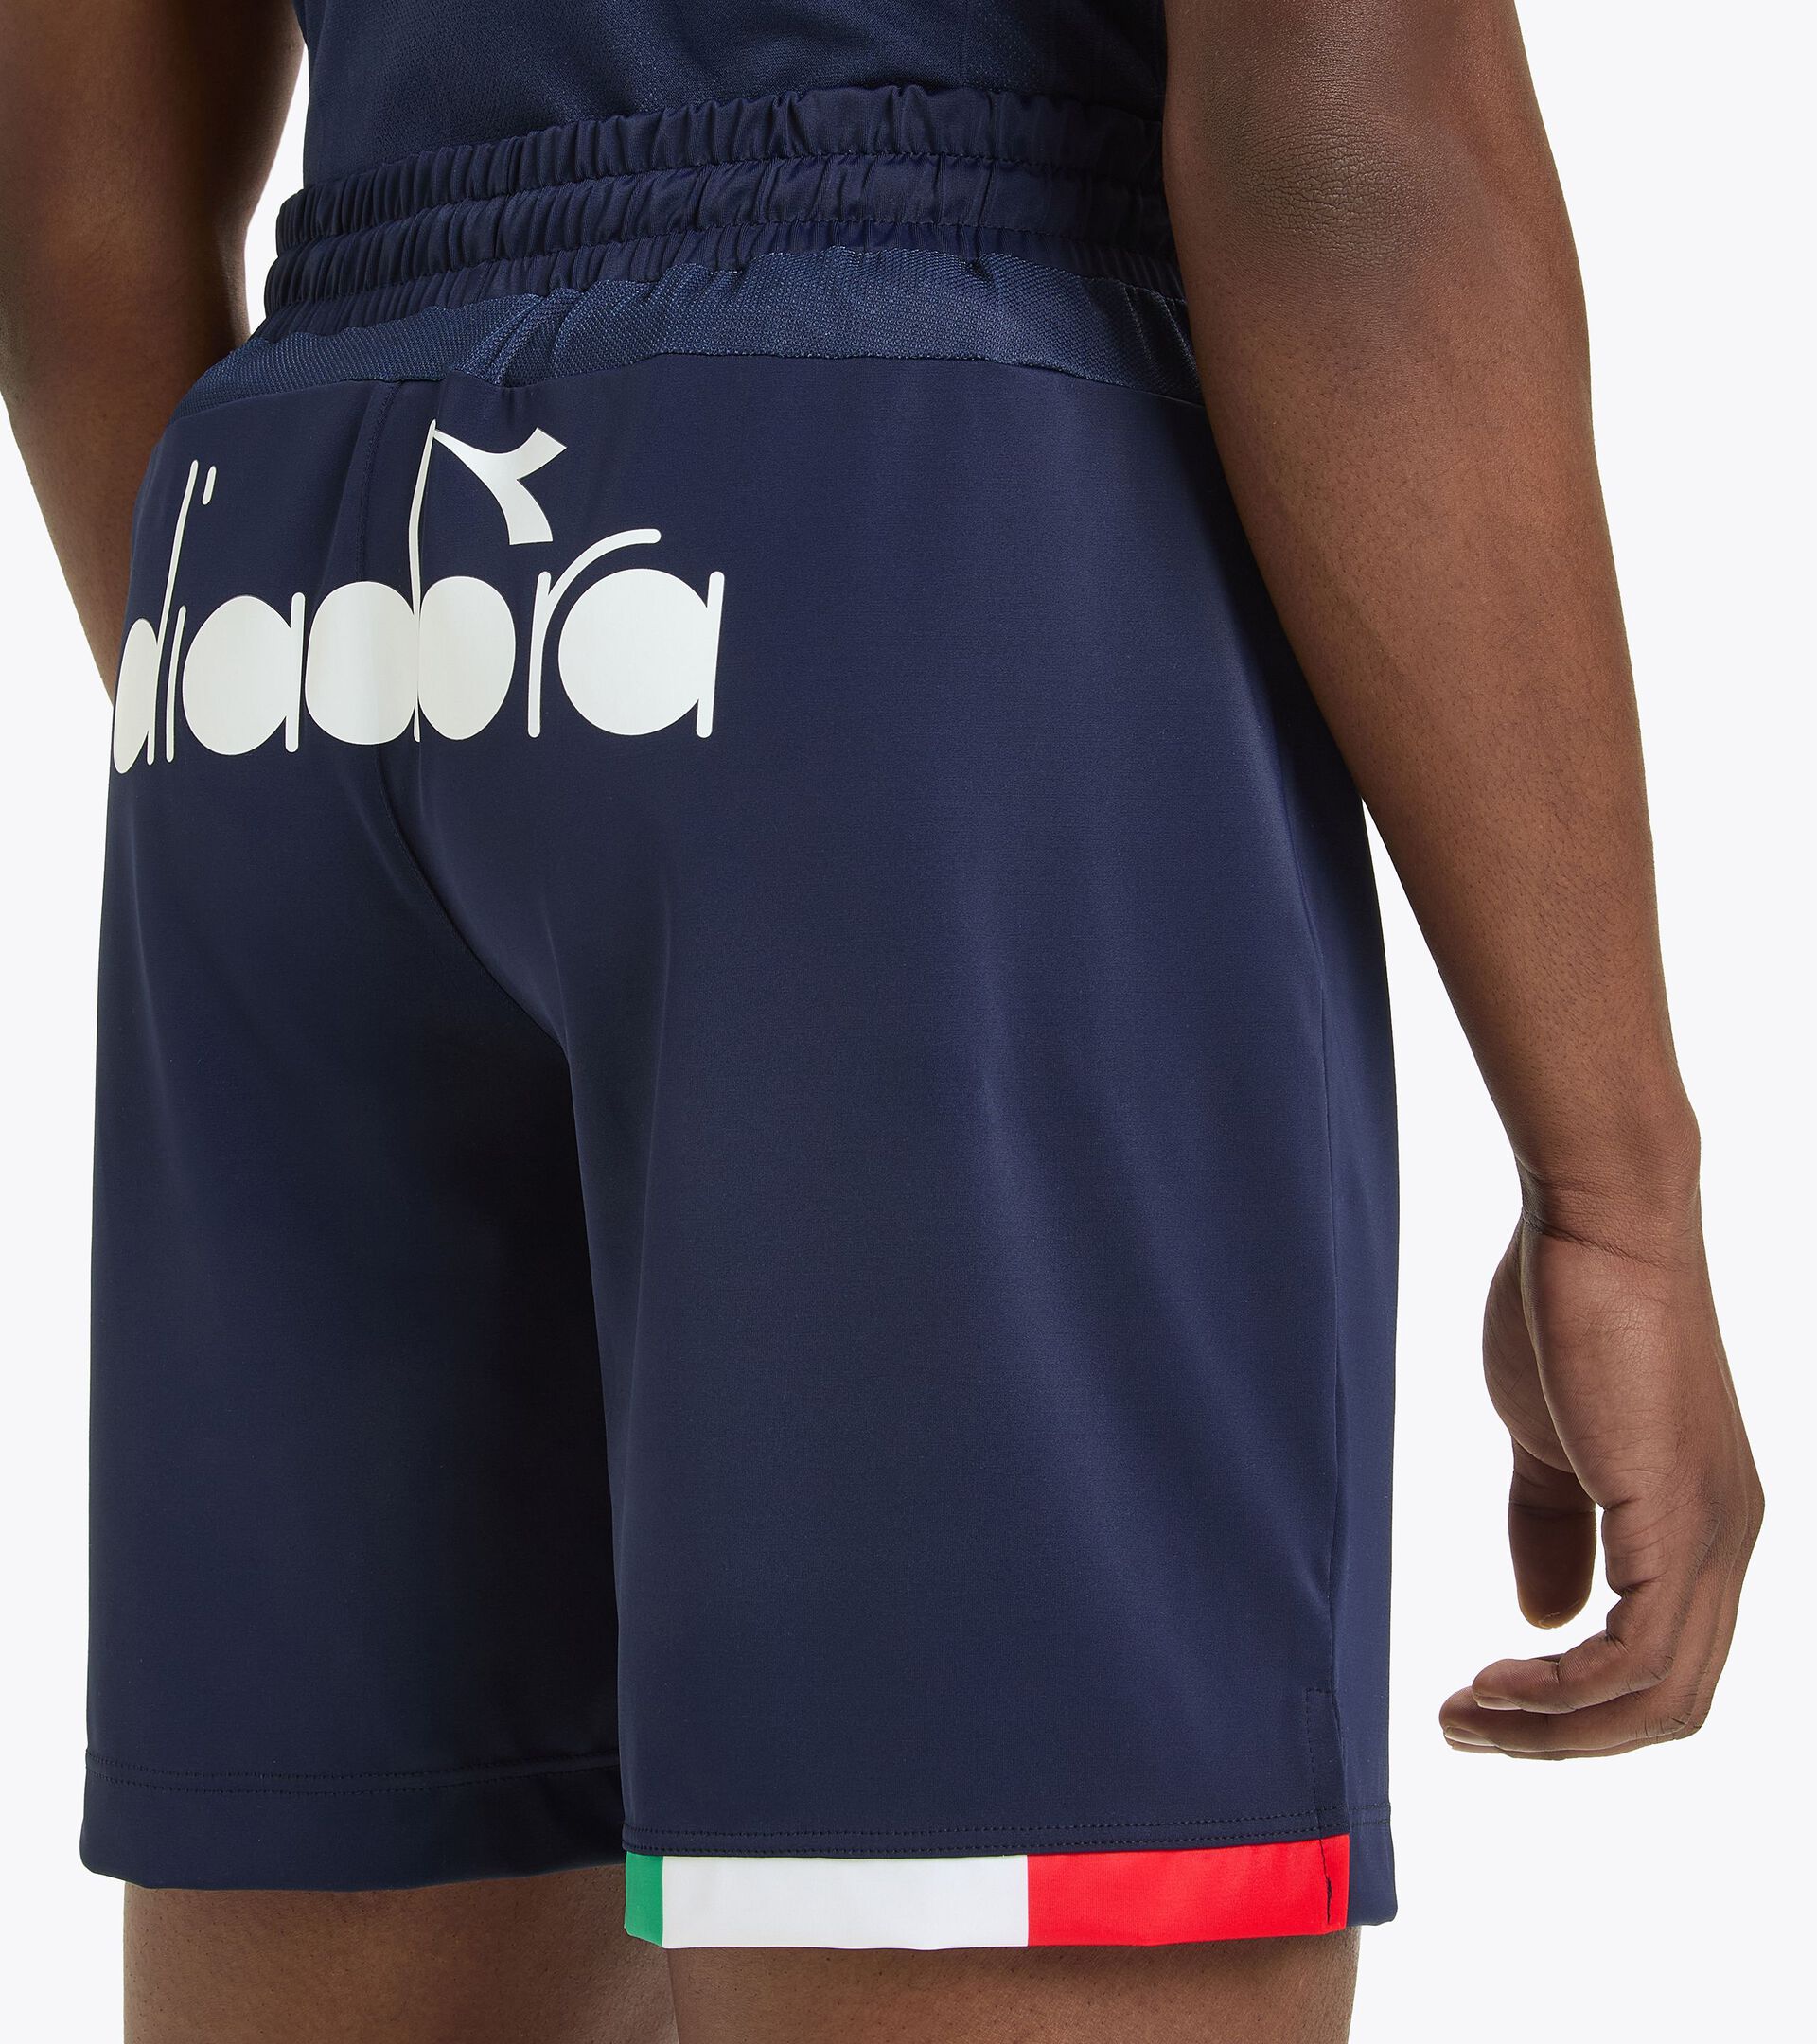 Wettkampf-Shorts für Herren - Beachvolleyball-Mannschaft Italien SHORT GARA UOMO BV ITALIA MARINEBLAU - Diadora